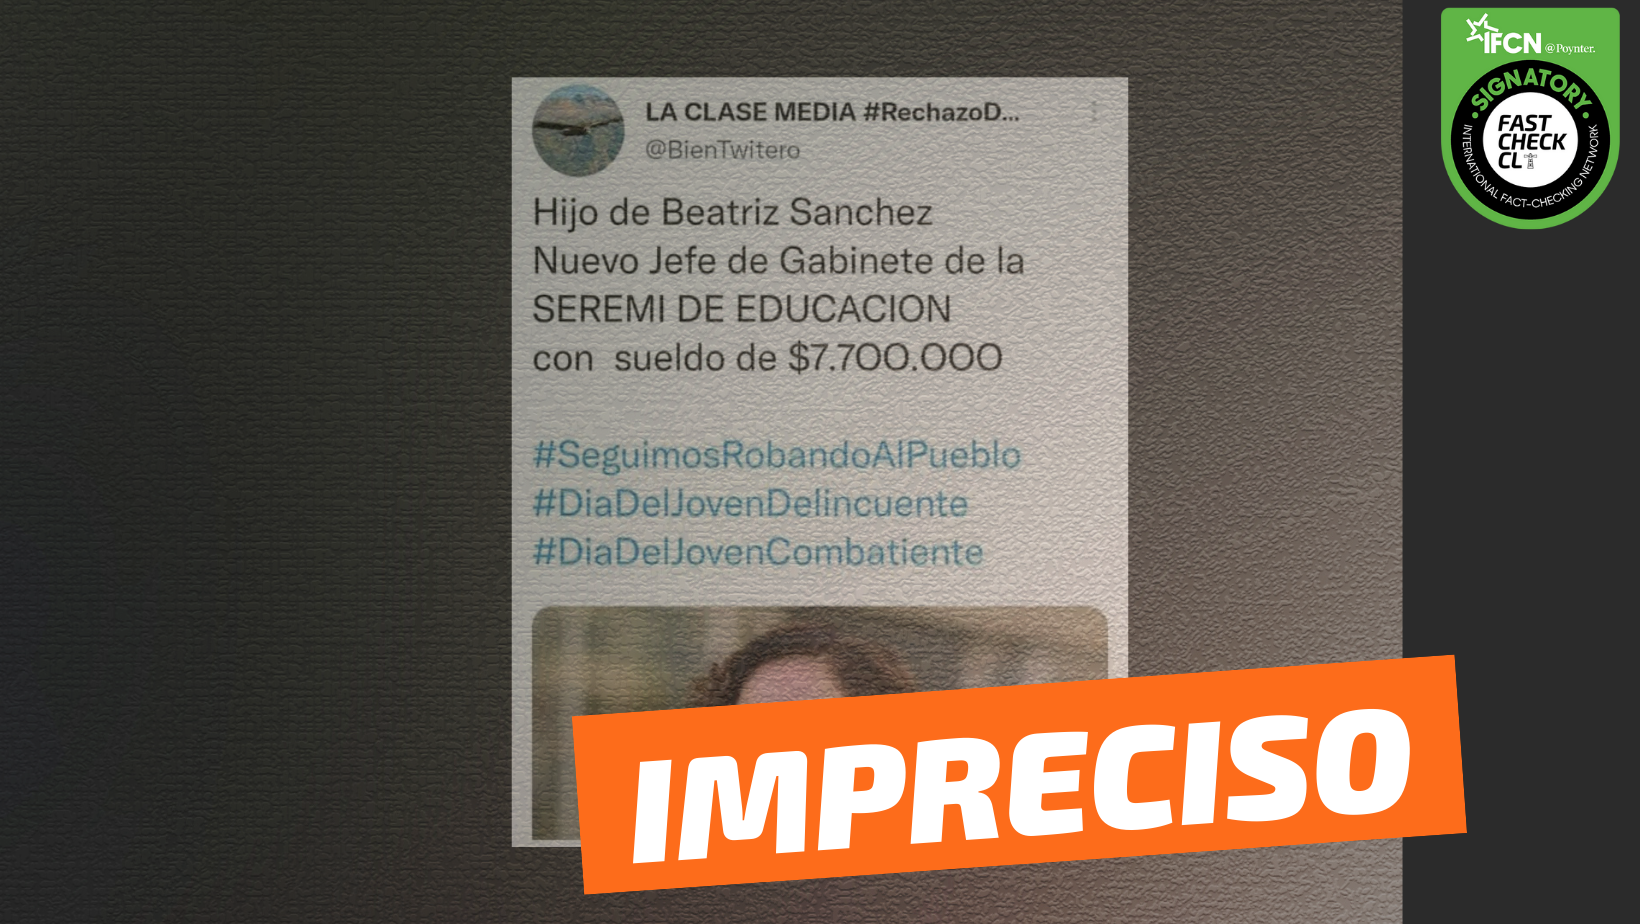 Read more about the article “Hijo de Beatriz Sánchez, nuevo jefe de gabinete de la Seremi de Educación, con sueldo de $7.700.000”: #Impreciso